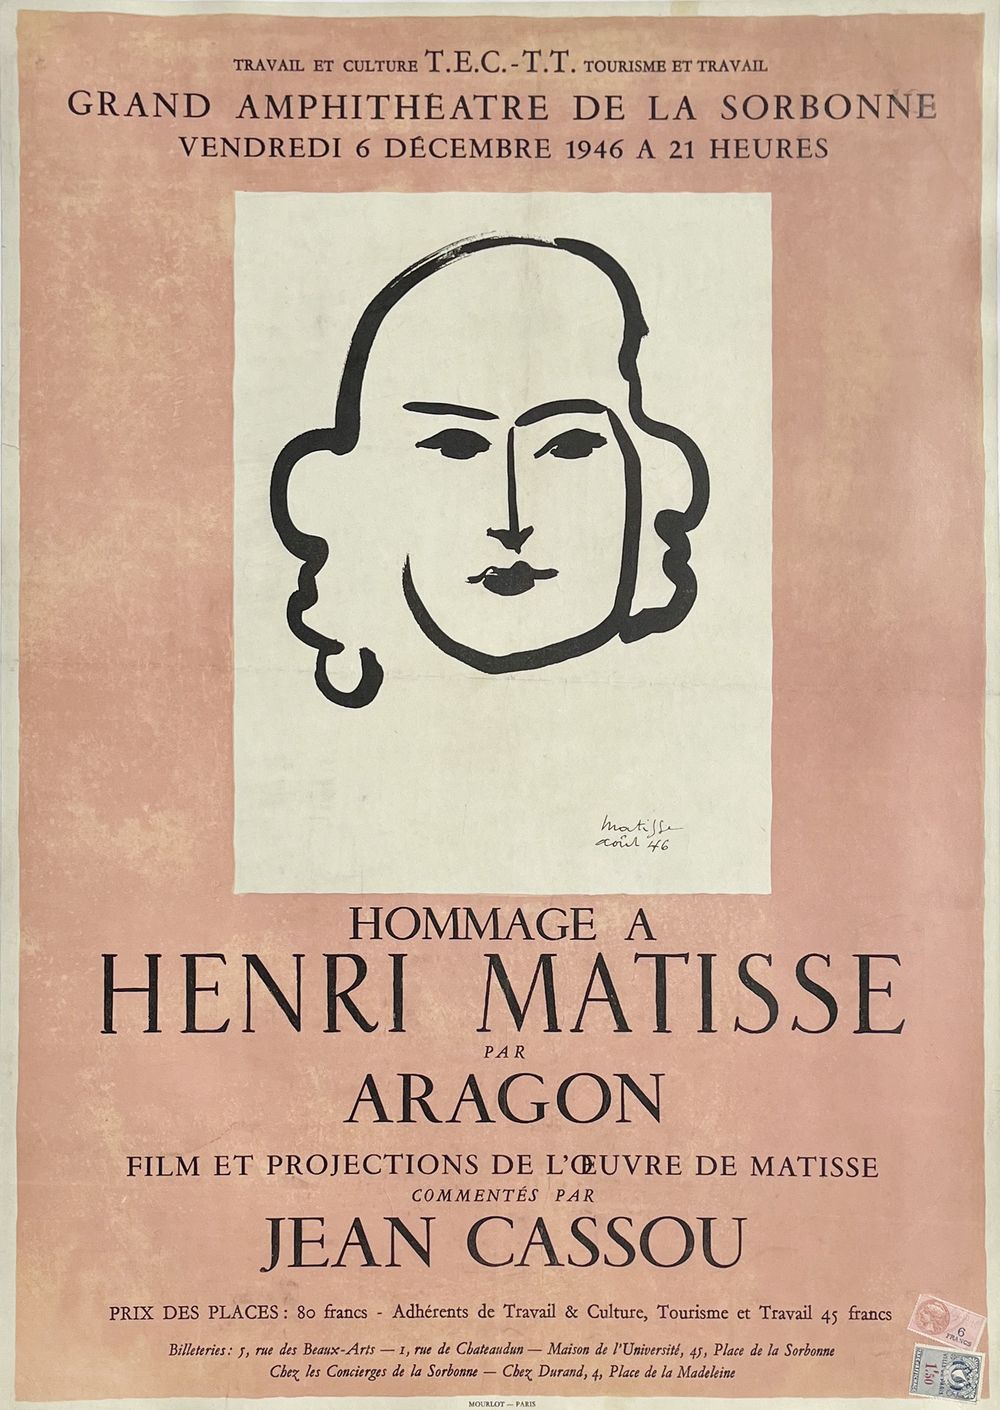 Expo 46 - Hommage à Henri Matisse par Aragon - Paris Sorbonne